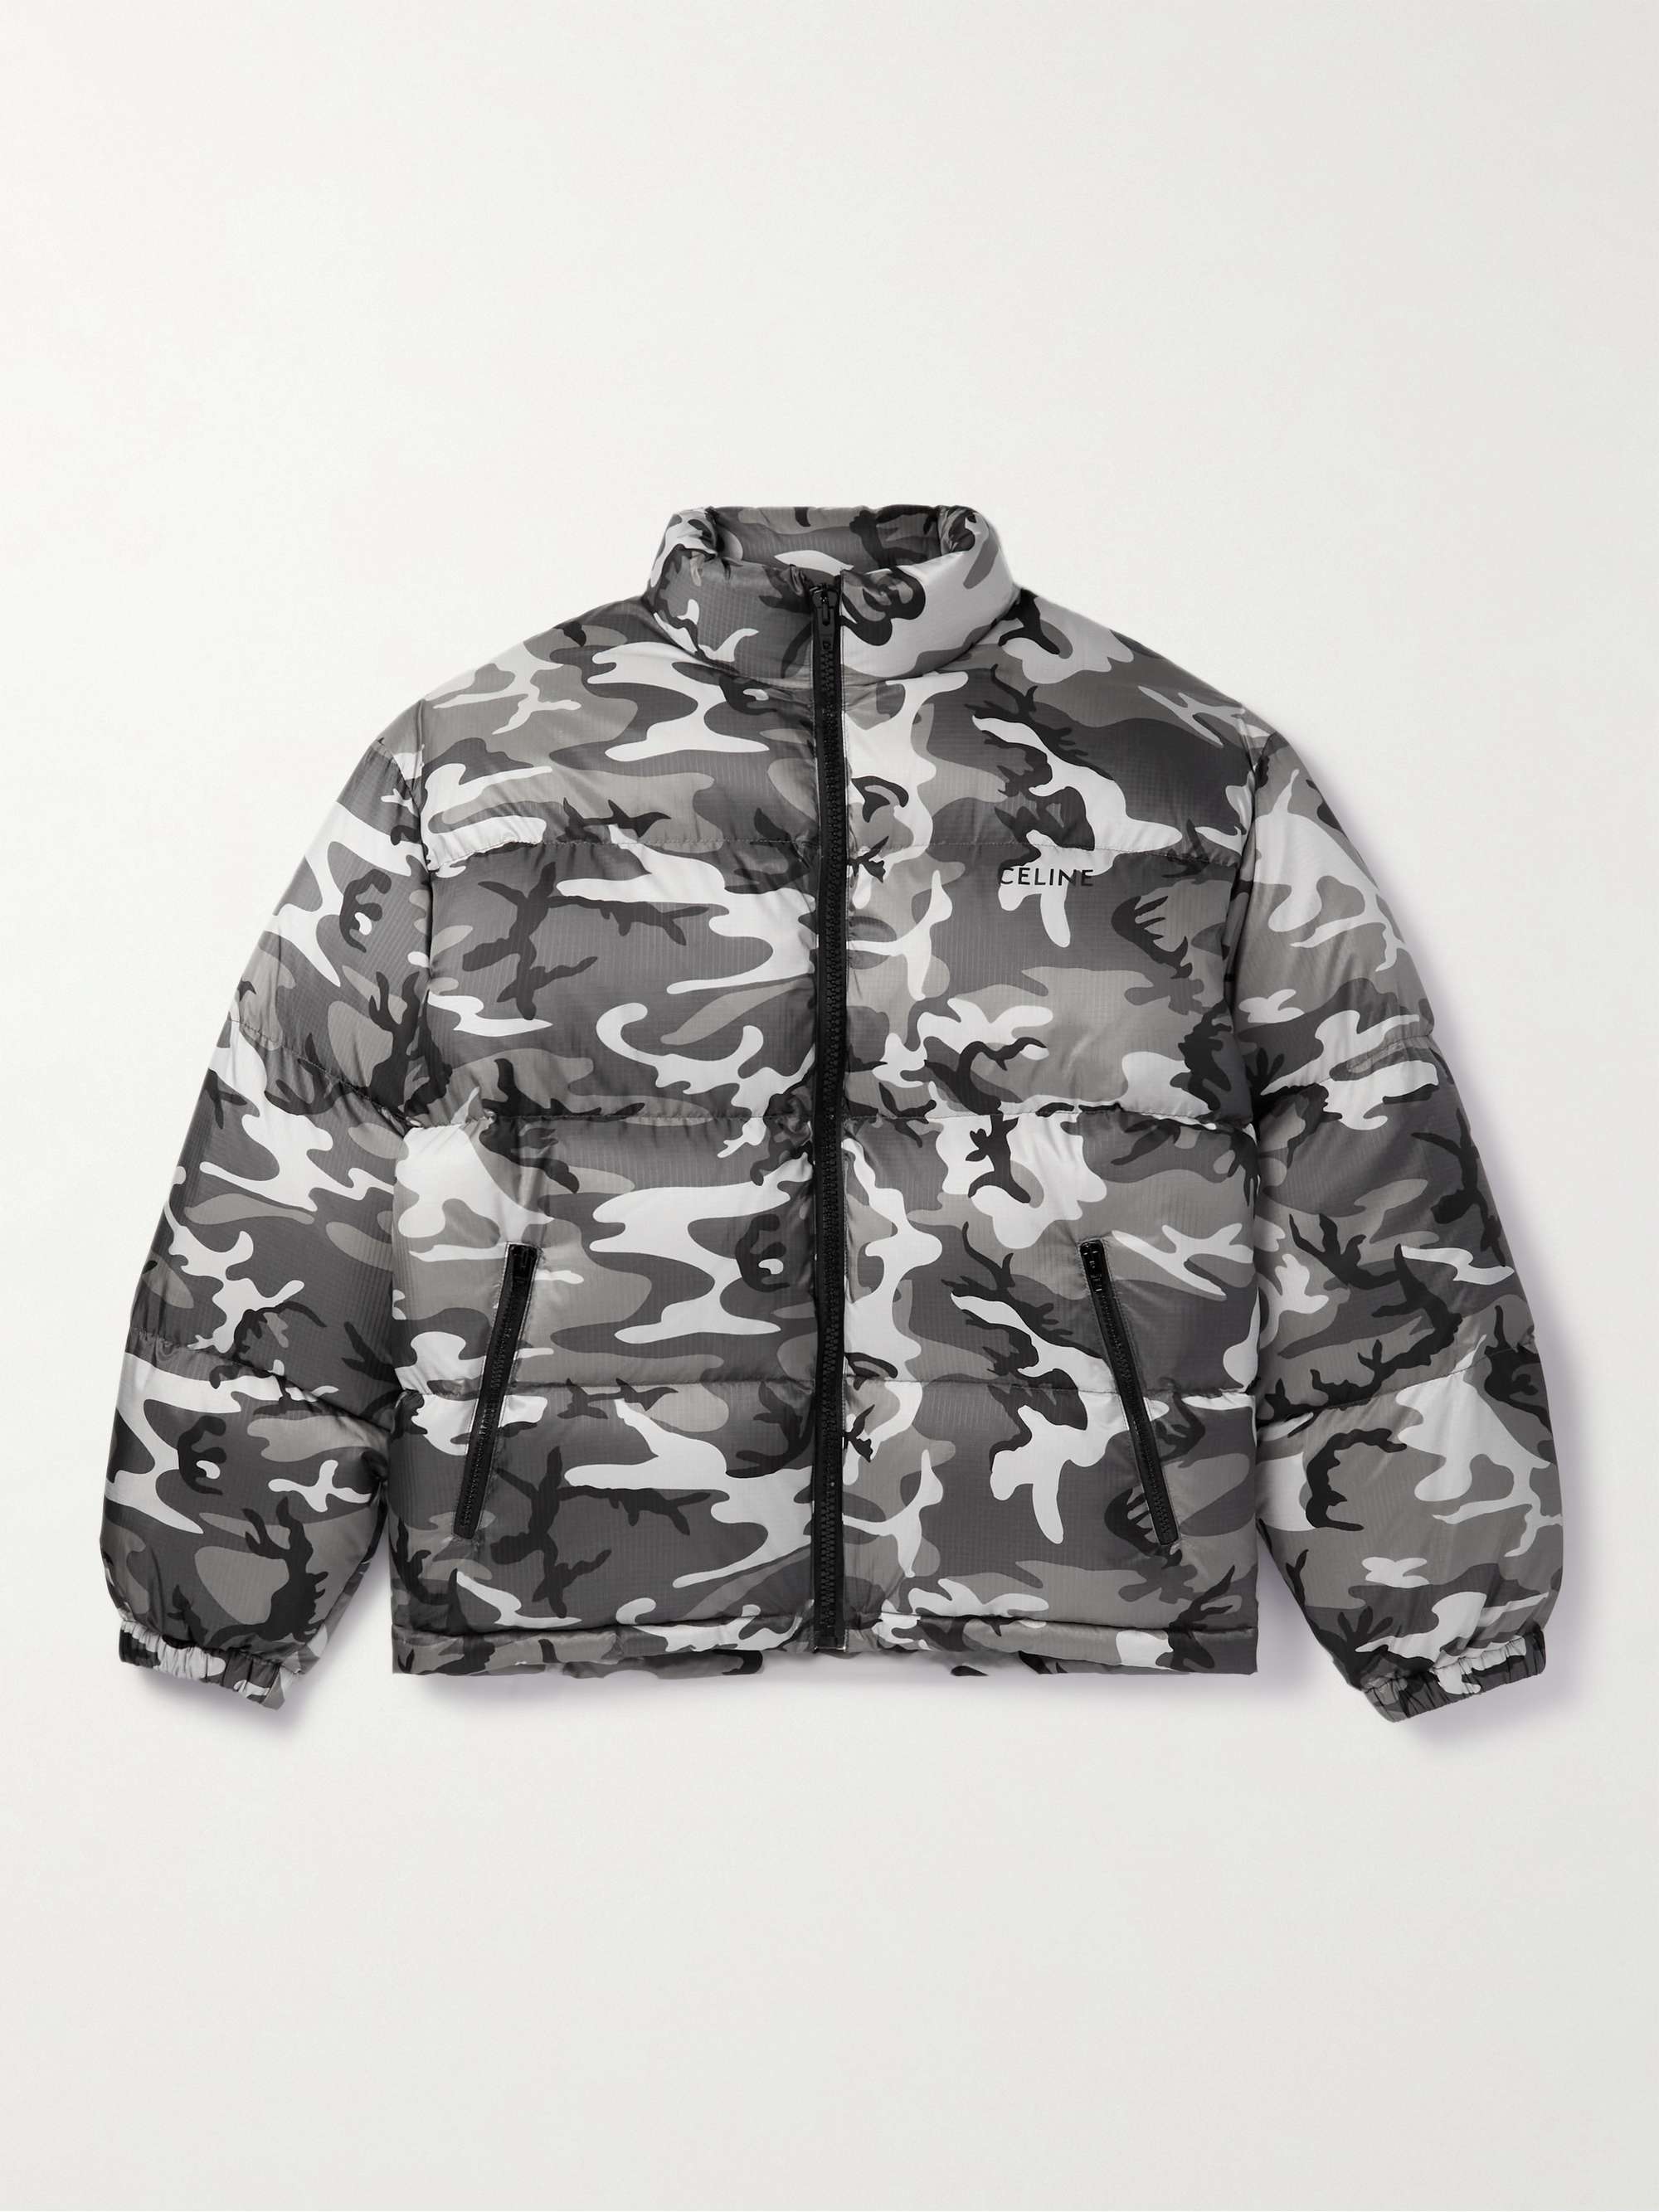 CELINE HOMME Camouflage-Print Nylon-Ripstop Down Jacket for Men | MR PORTER